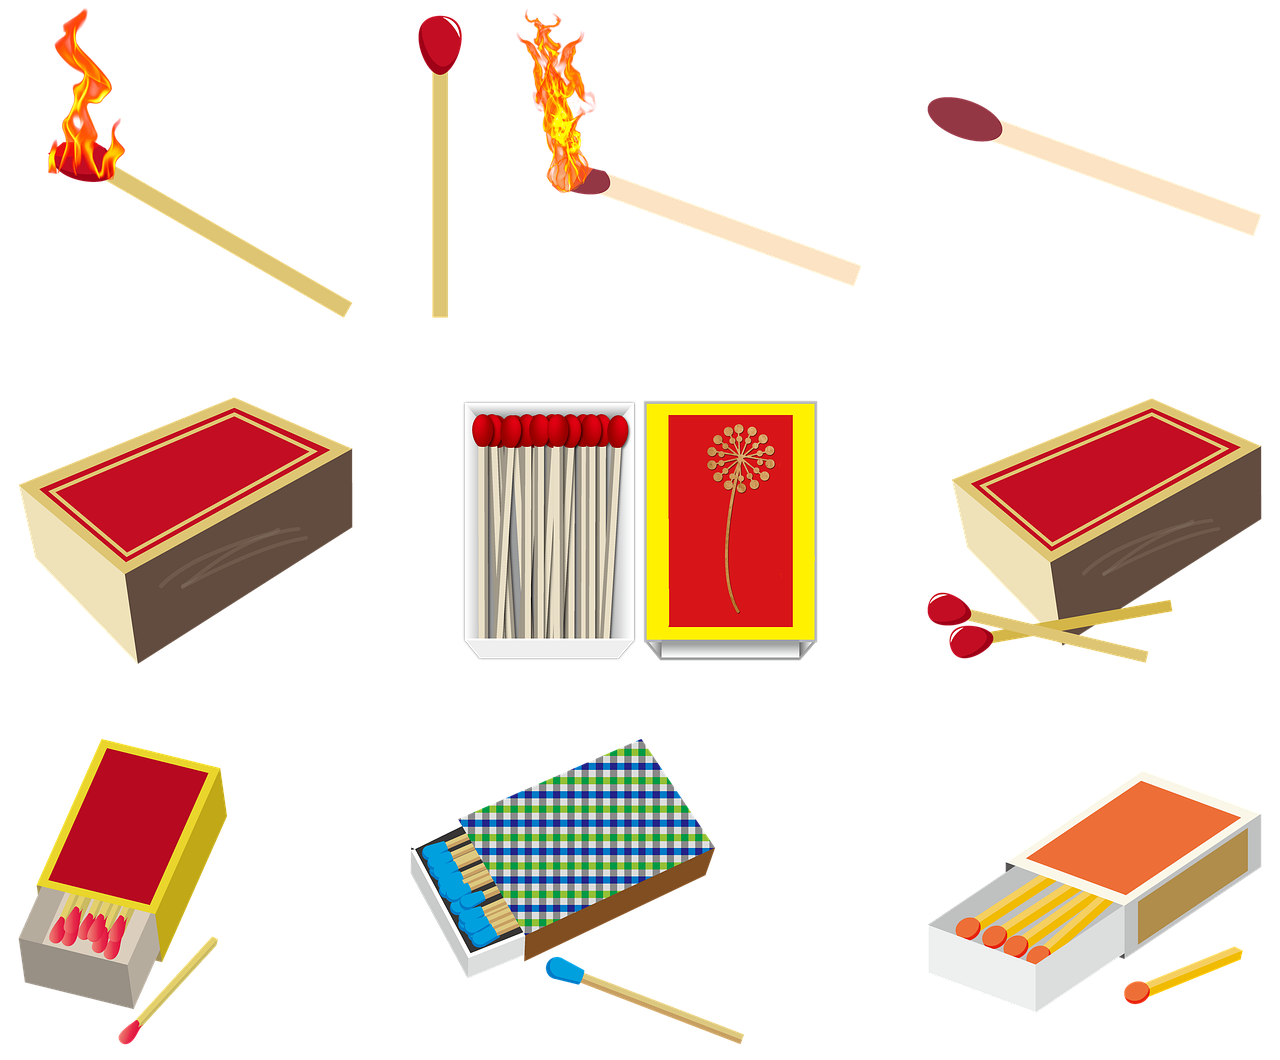 File:Match stick, lit a match, match box, fire.JPG - Wikimedia Commons